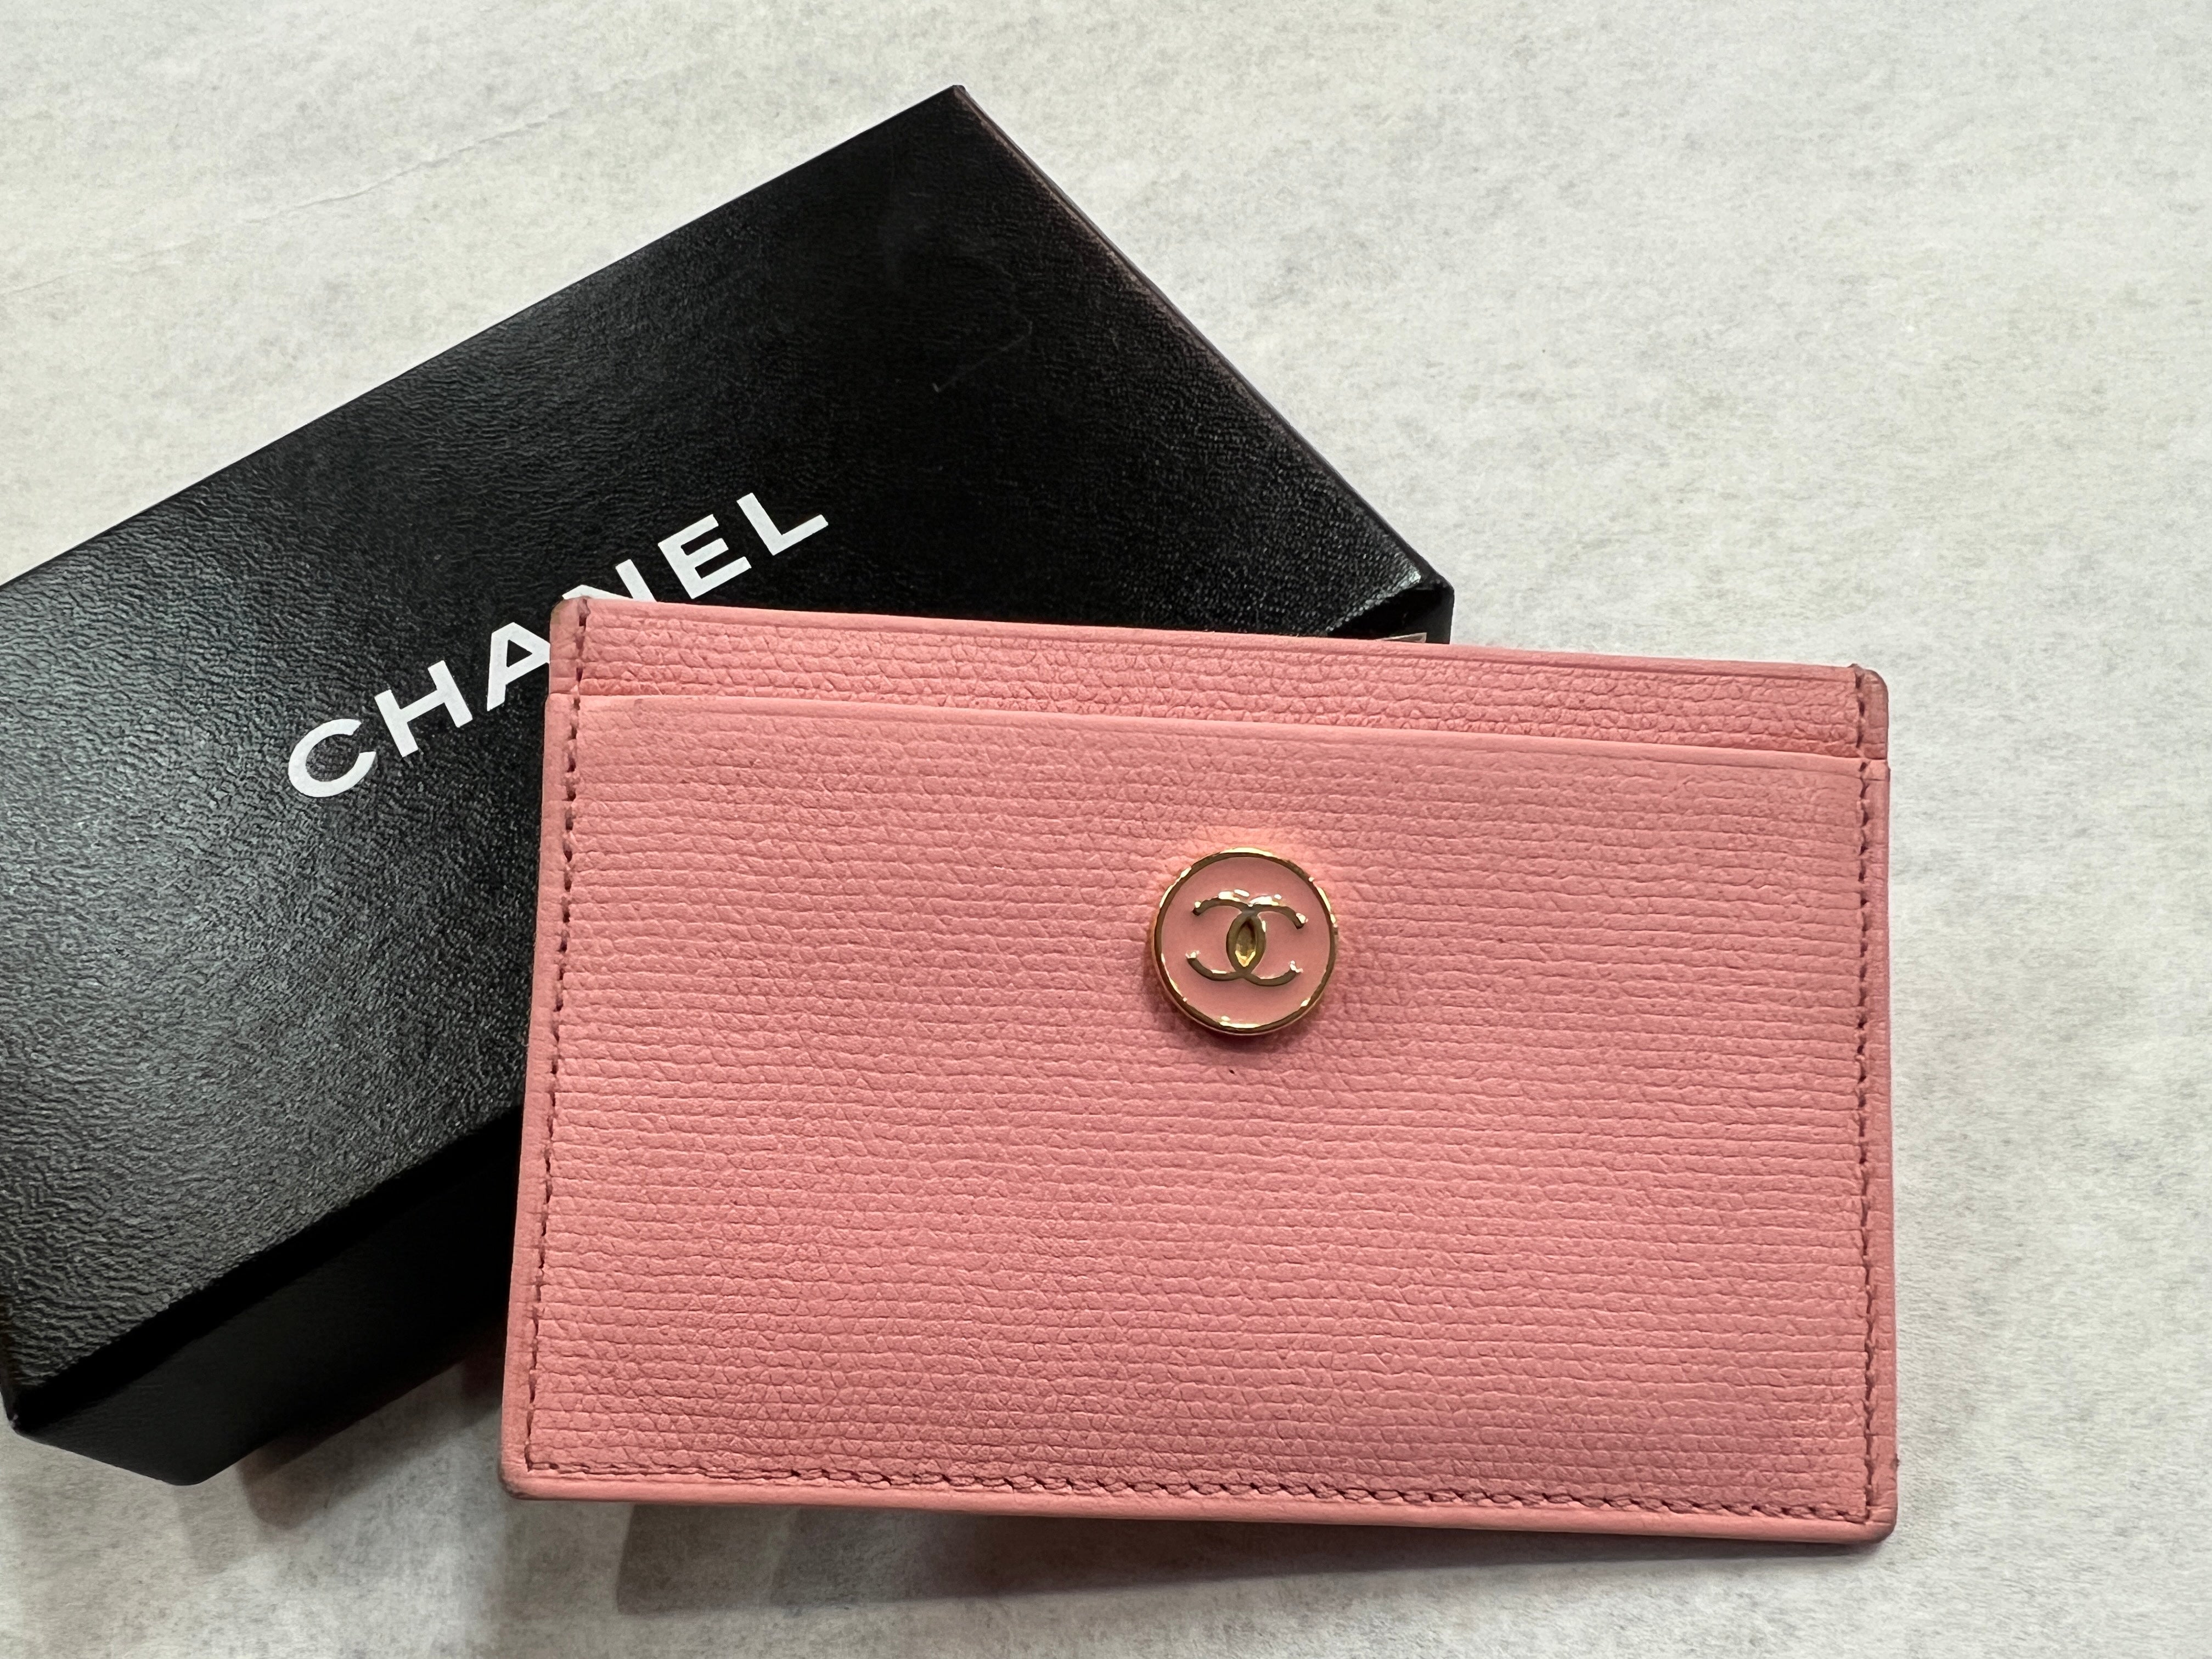 Chanel key case/key holder - Gem